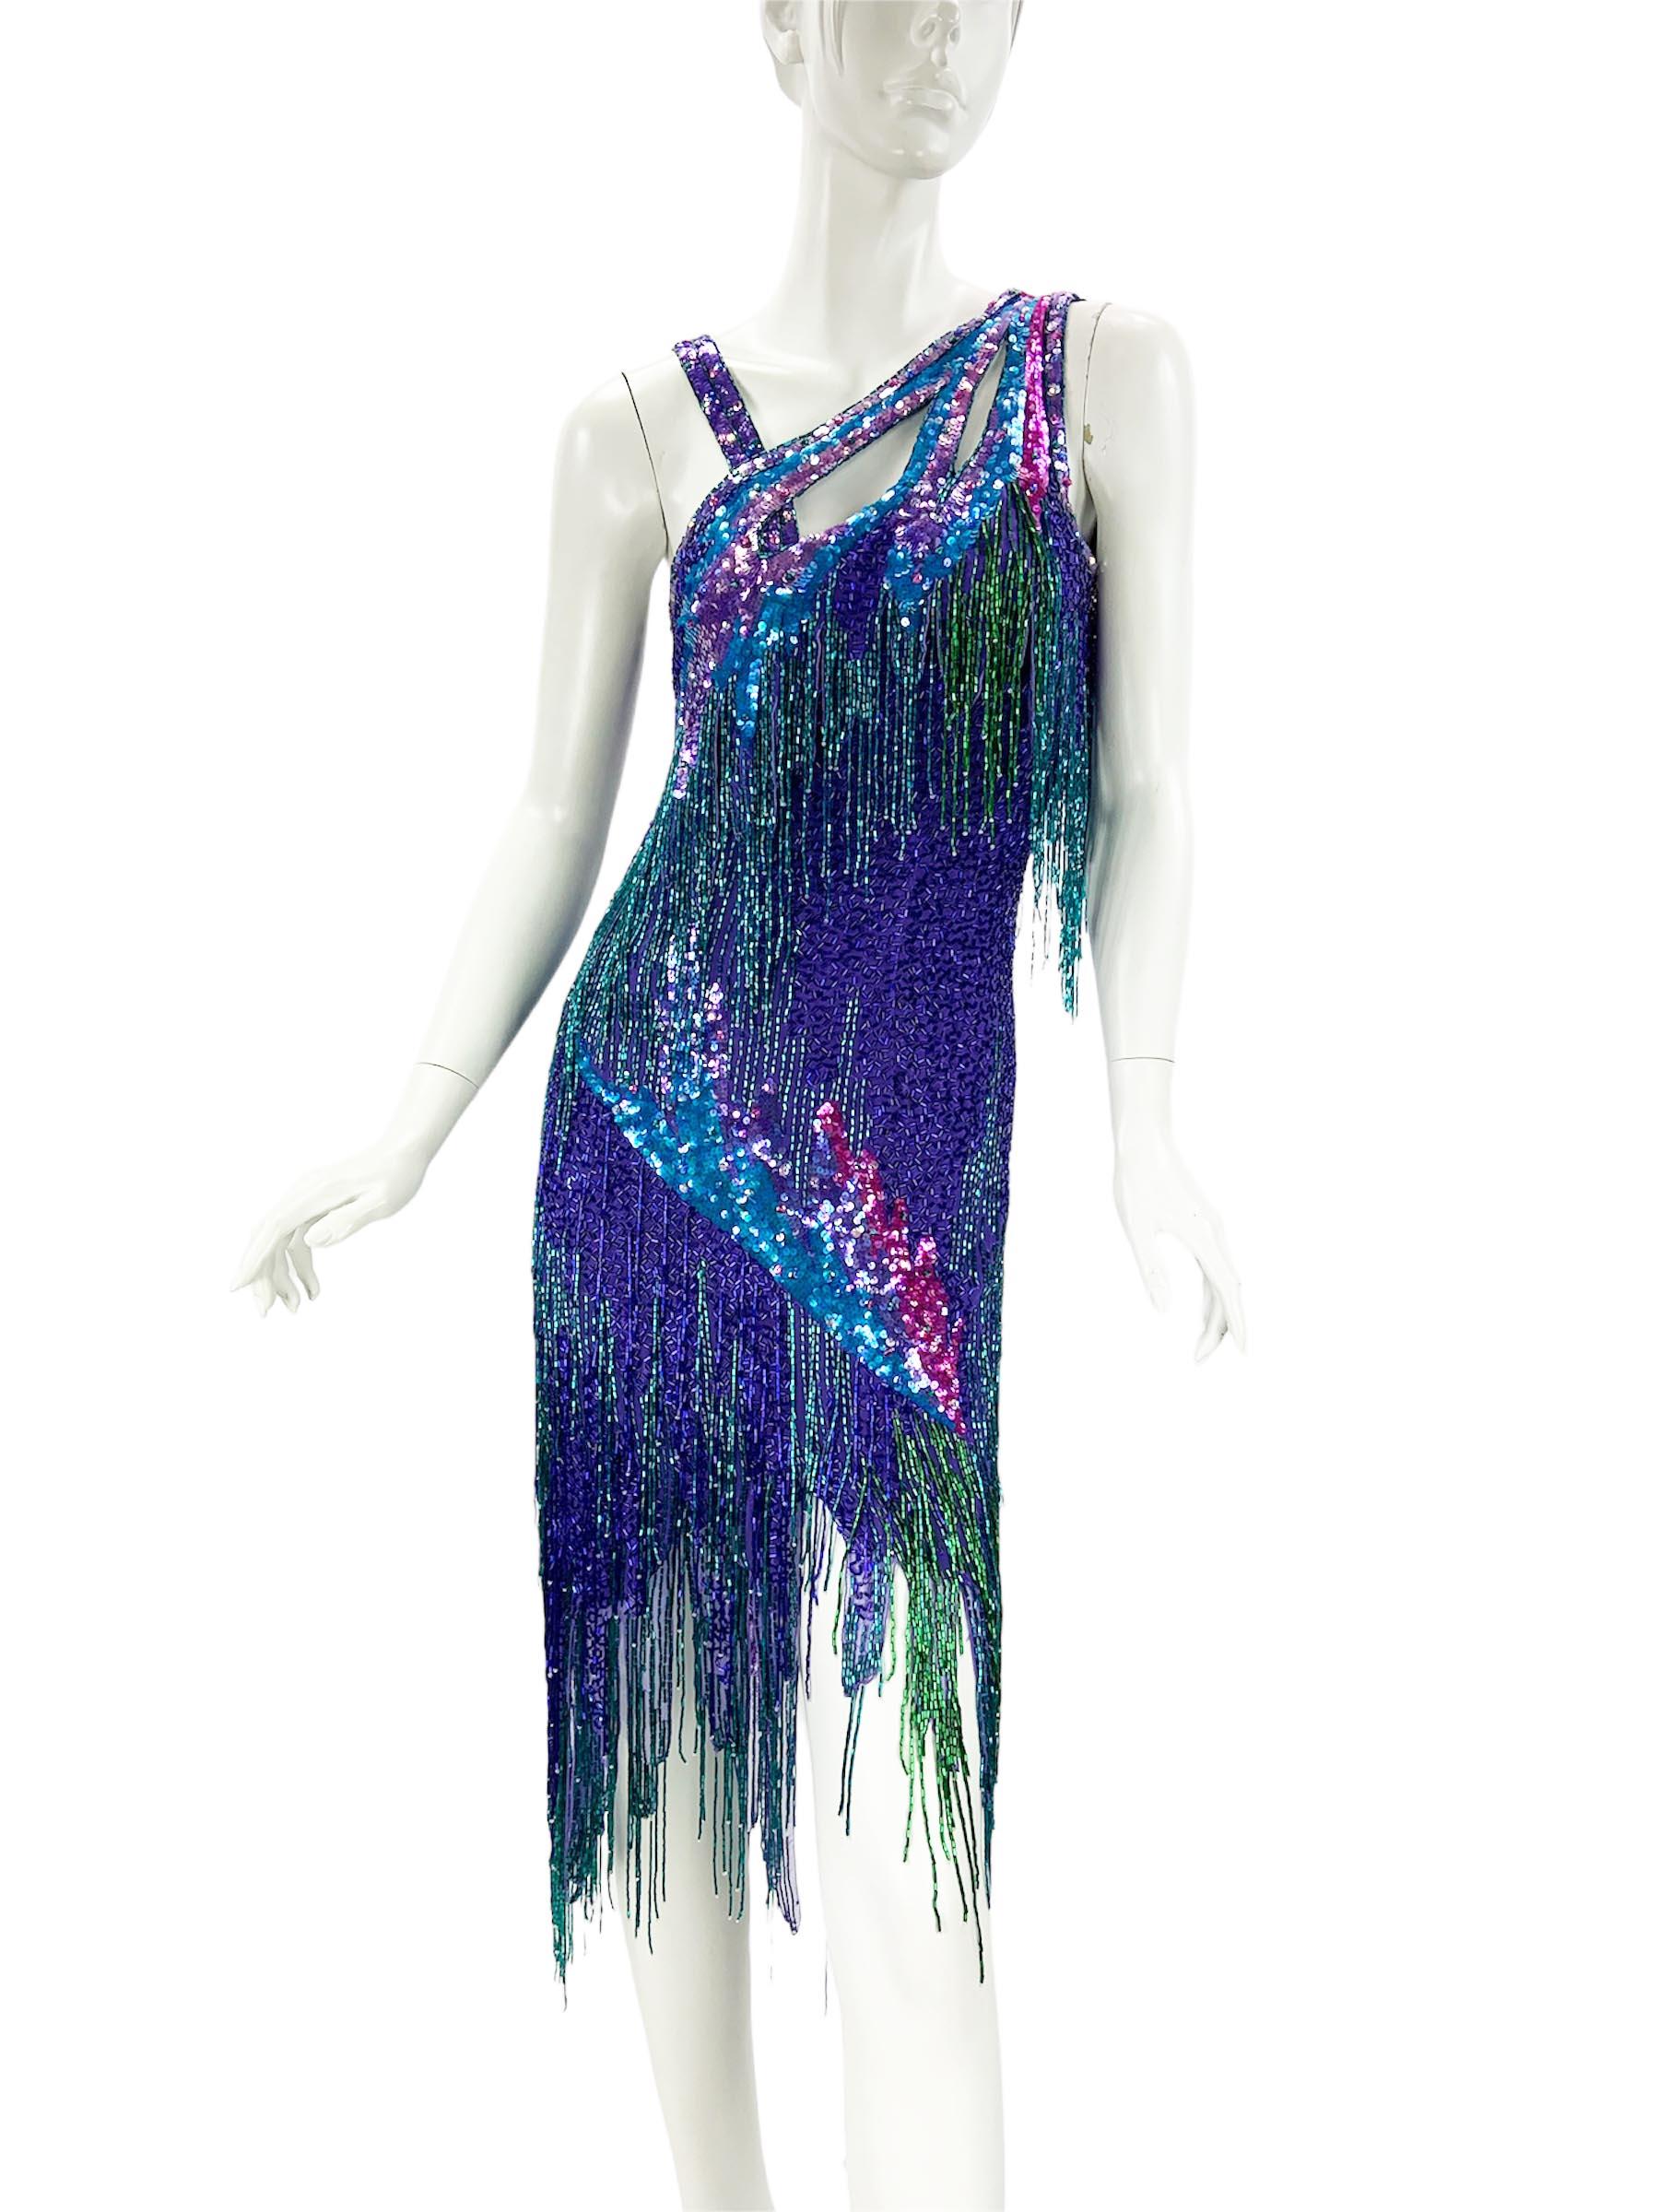 Bob Mackie für Amen Wardy Vollständig verschönertes Abendkleid
1980'S Collection'S
Dress wurde im Los Angeles County Museum of Art ( LACMA ) präsentiert.
Das spektakuläre Cocktailkleid ist aus violetter Seide gefertigt, die mit juwelenfarbenen